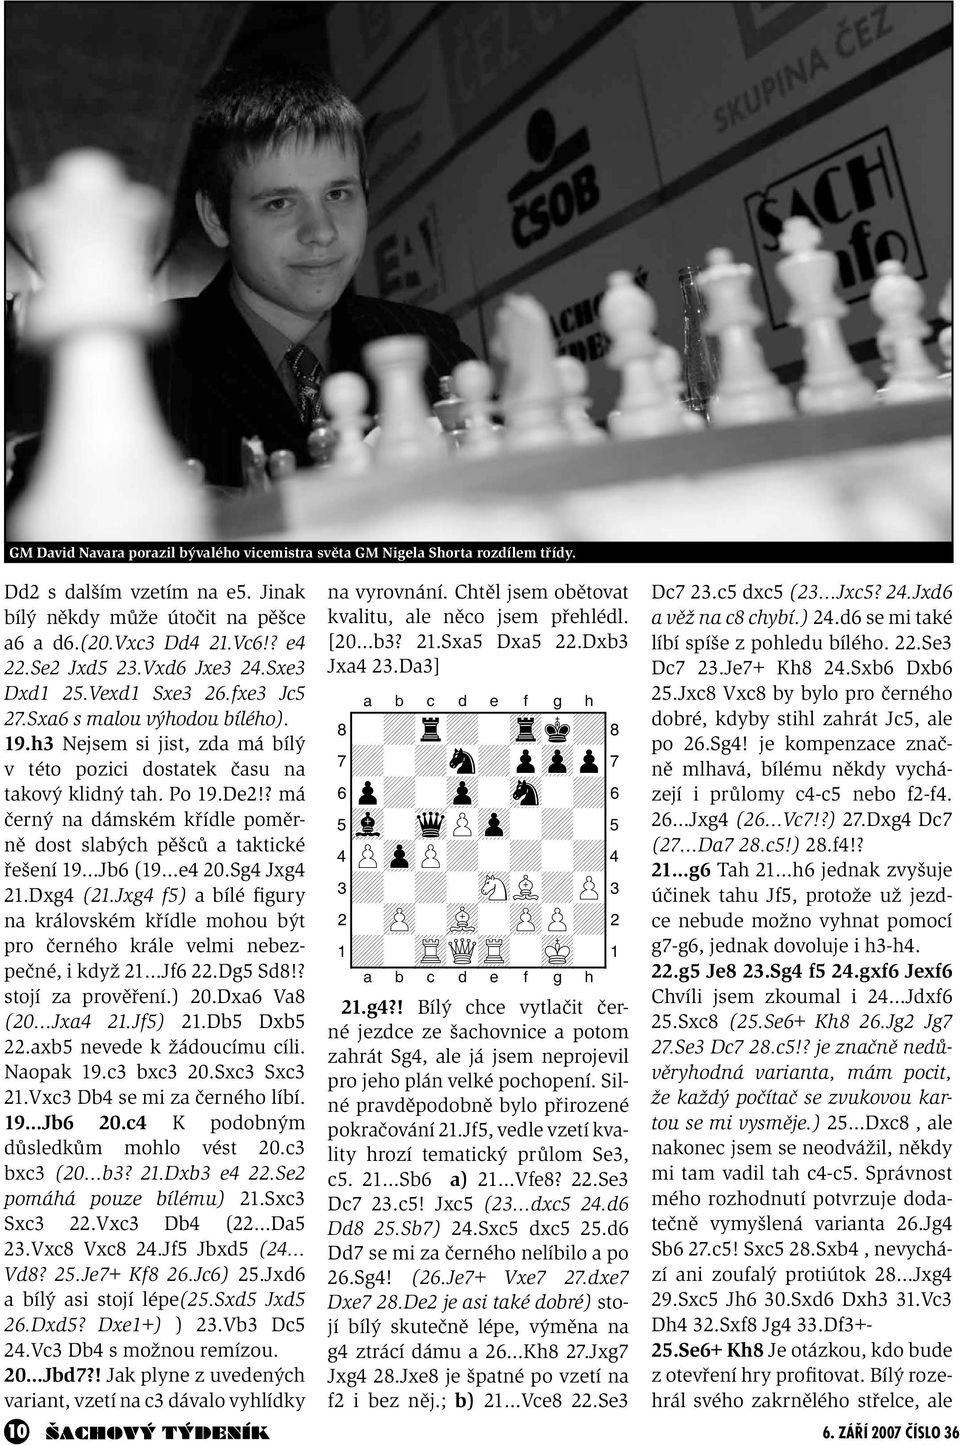 ? má černý na dámském křídle poměrně dost slabých pěšců a taktické řešení 19 Jb6 (19 e4 20.Sg4 Jxg4 21.Dxg4 (21.